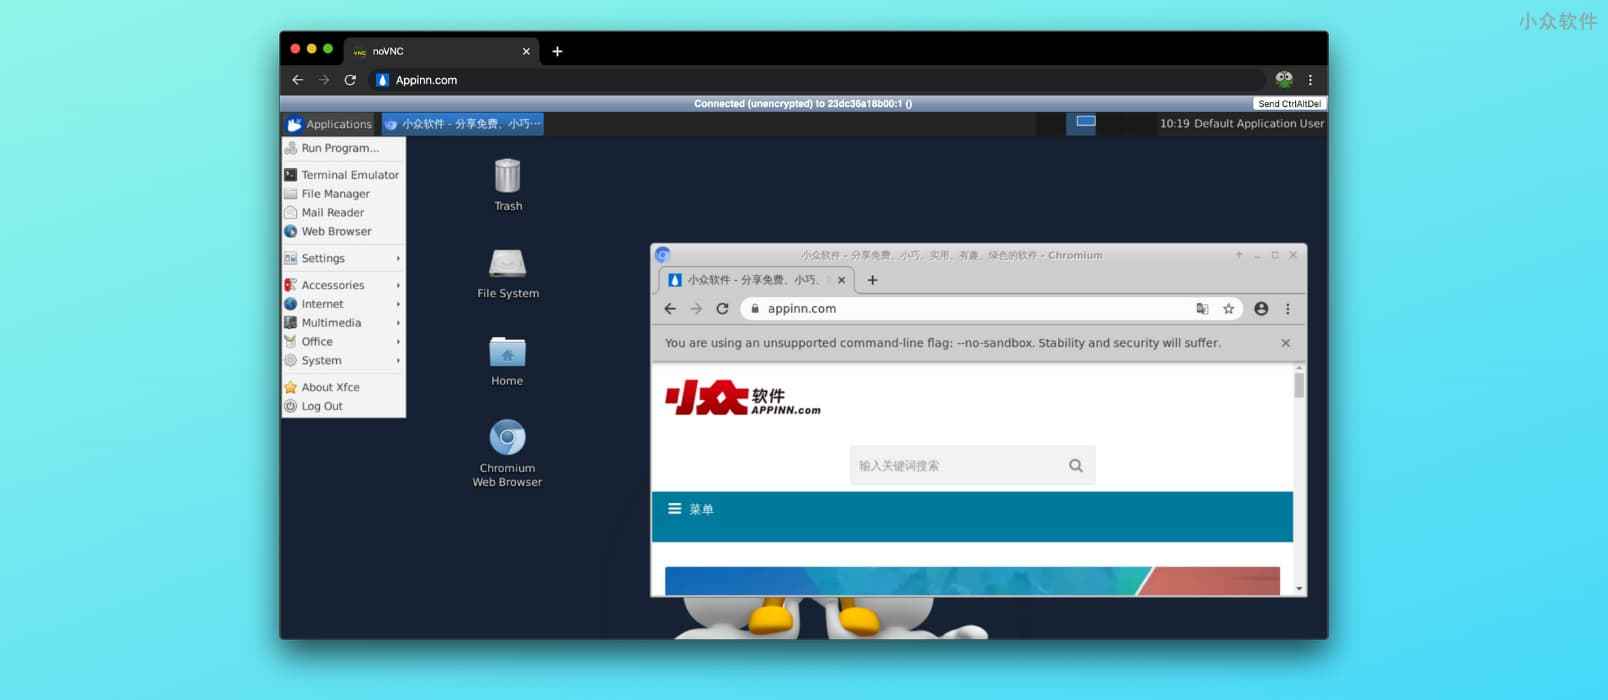 可直接用浏览器打开的无头计算机，包含 Chrome 与 Firefox，支持 VNC、RDP 协议[Docker]